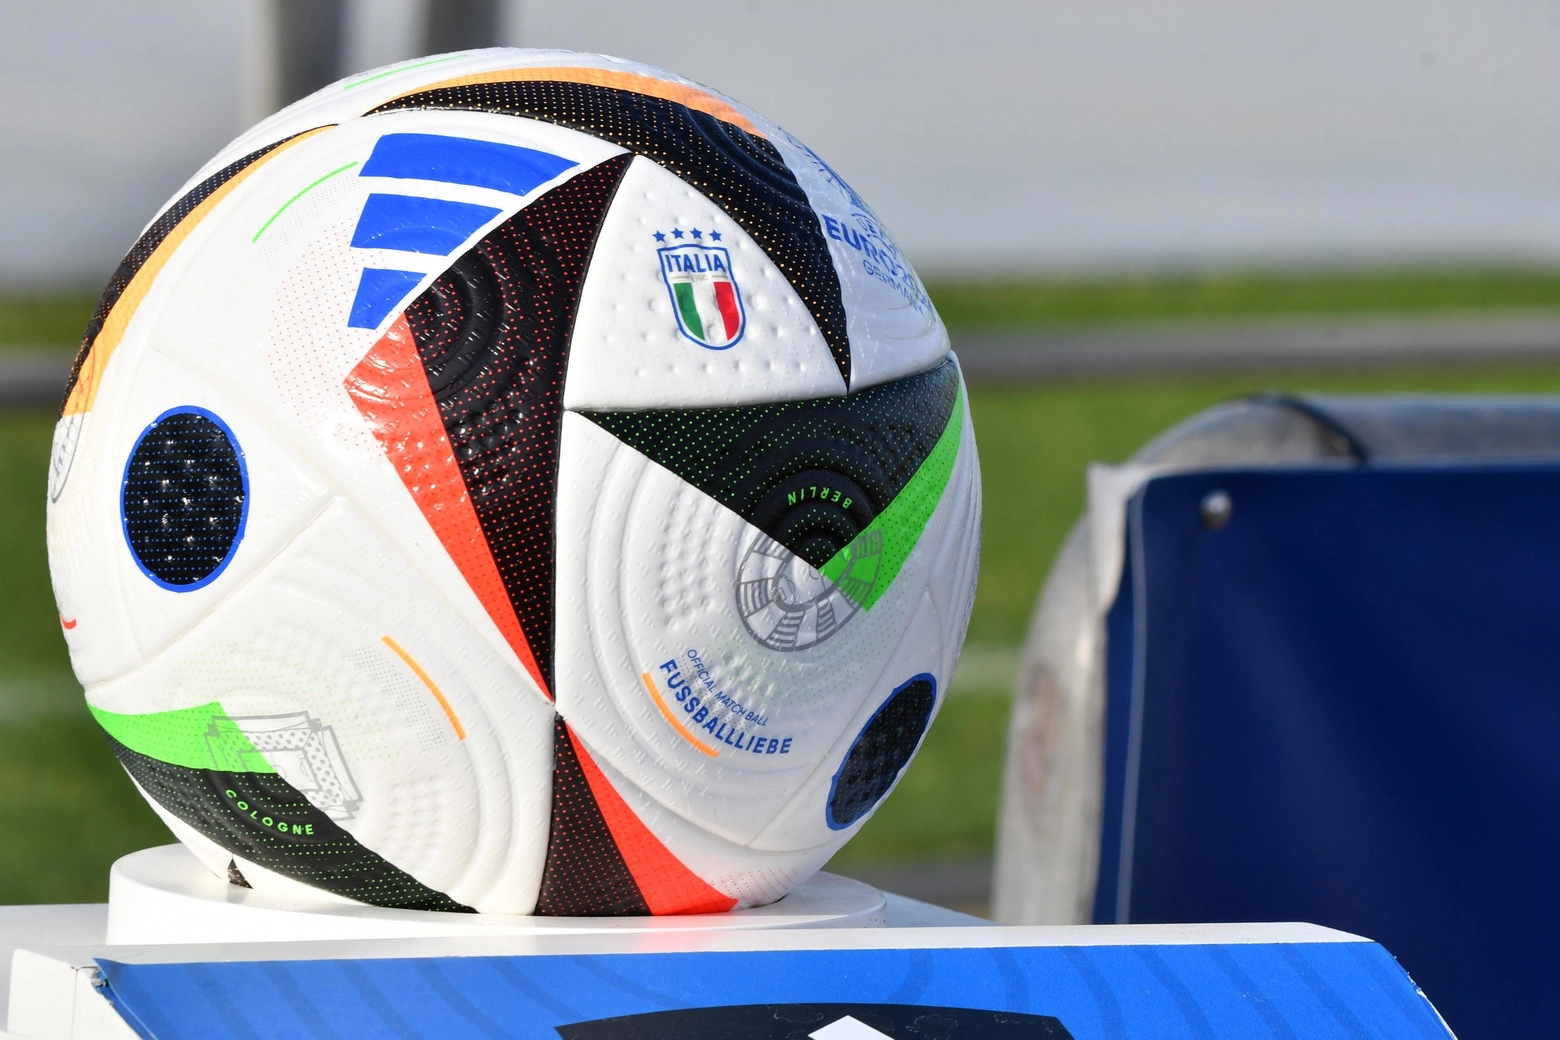 Fussballliebe, il pallone ufficiale di Uefa Euro 2024 (foto FOTOEST)